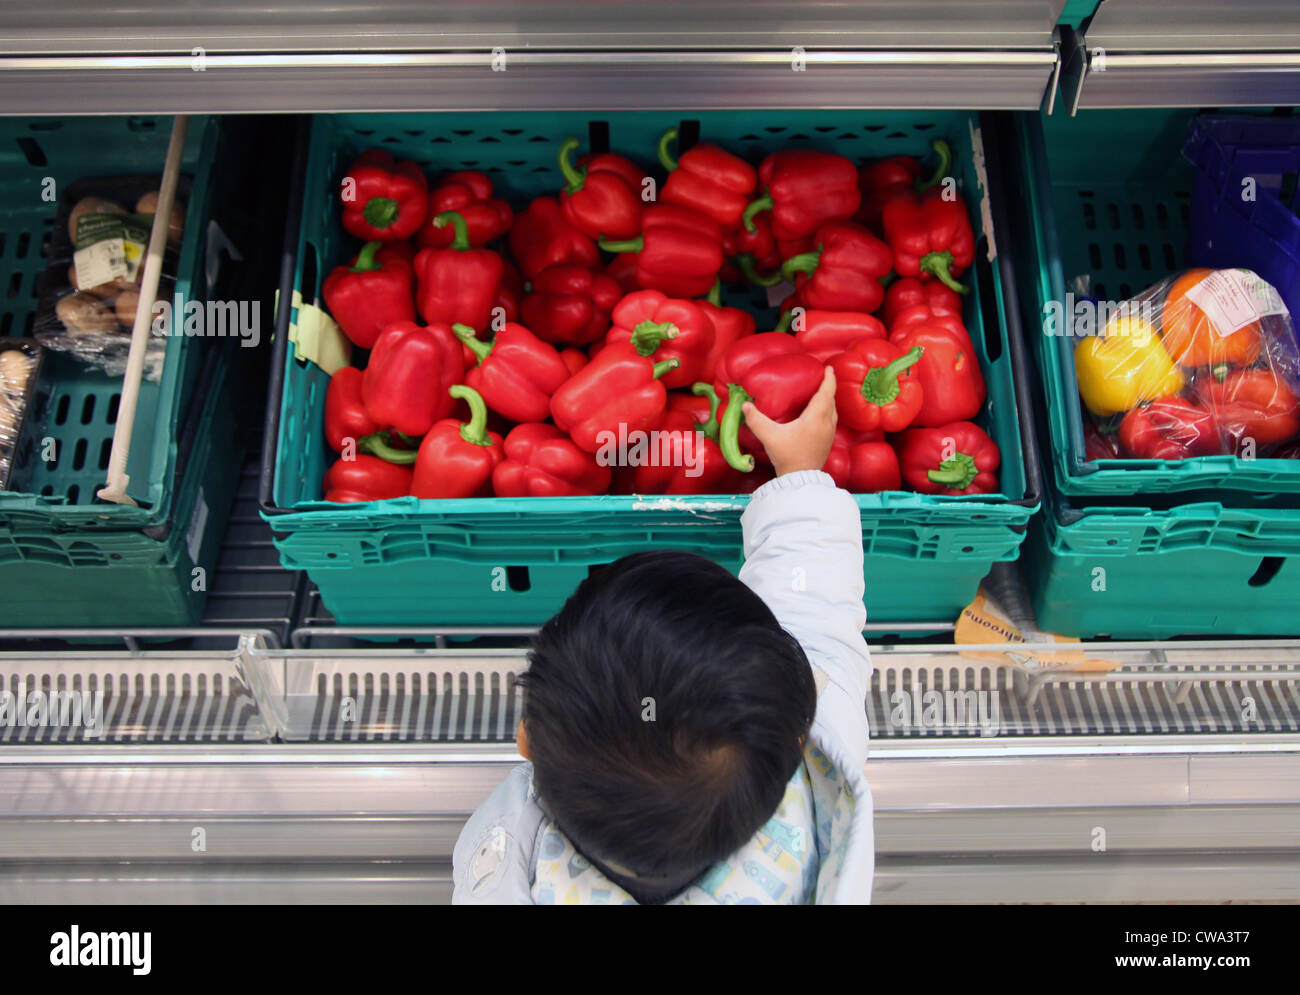 Es ist ein Foto von Paprika in Großaufnahme in einem grünen Korb oder Kiste in einem Supermarkt. Ein kleiner Junge versucht, einer von ihnen zu greifen. Stockfoto